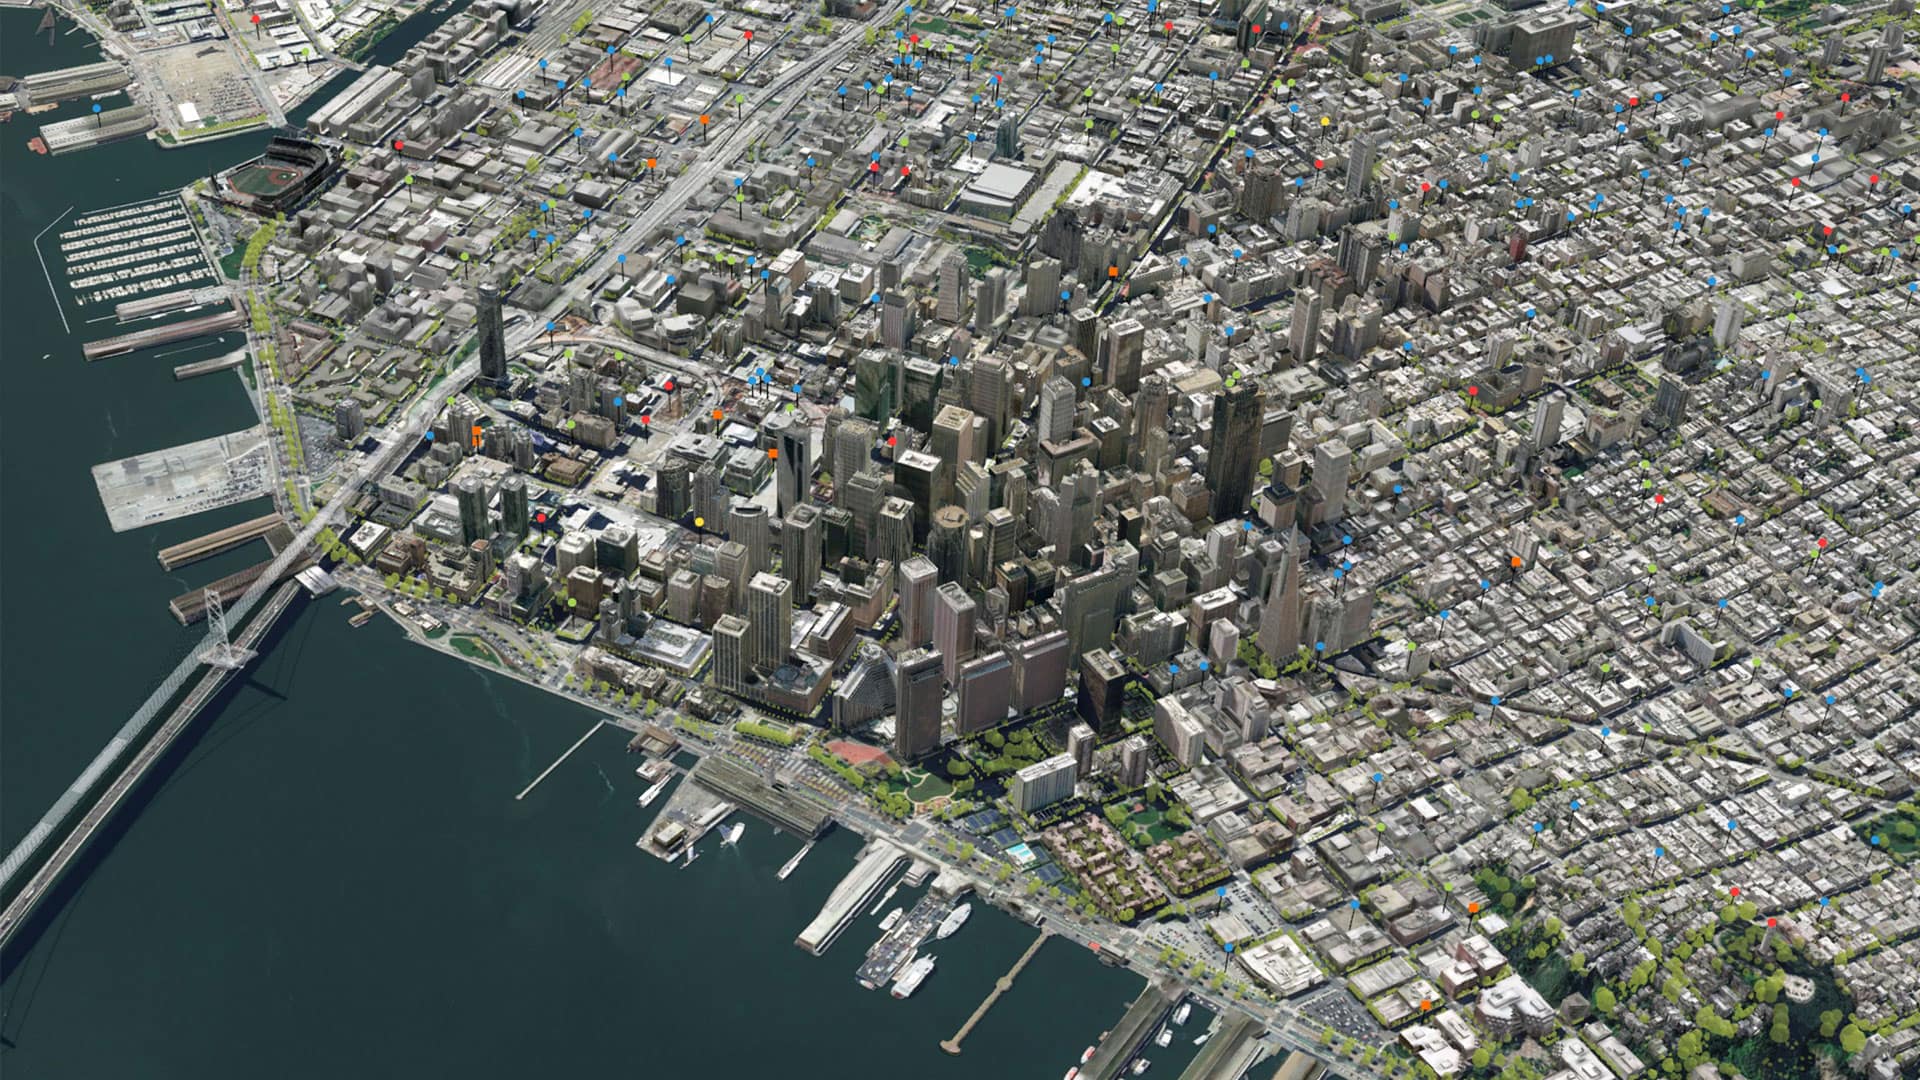 3D model of San Francisco